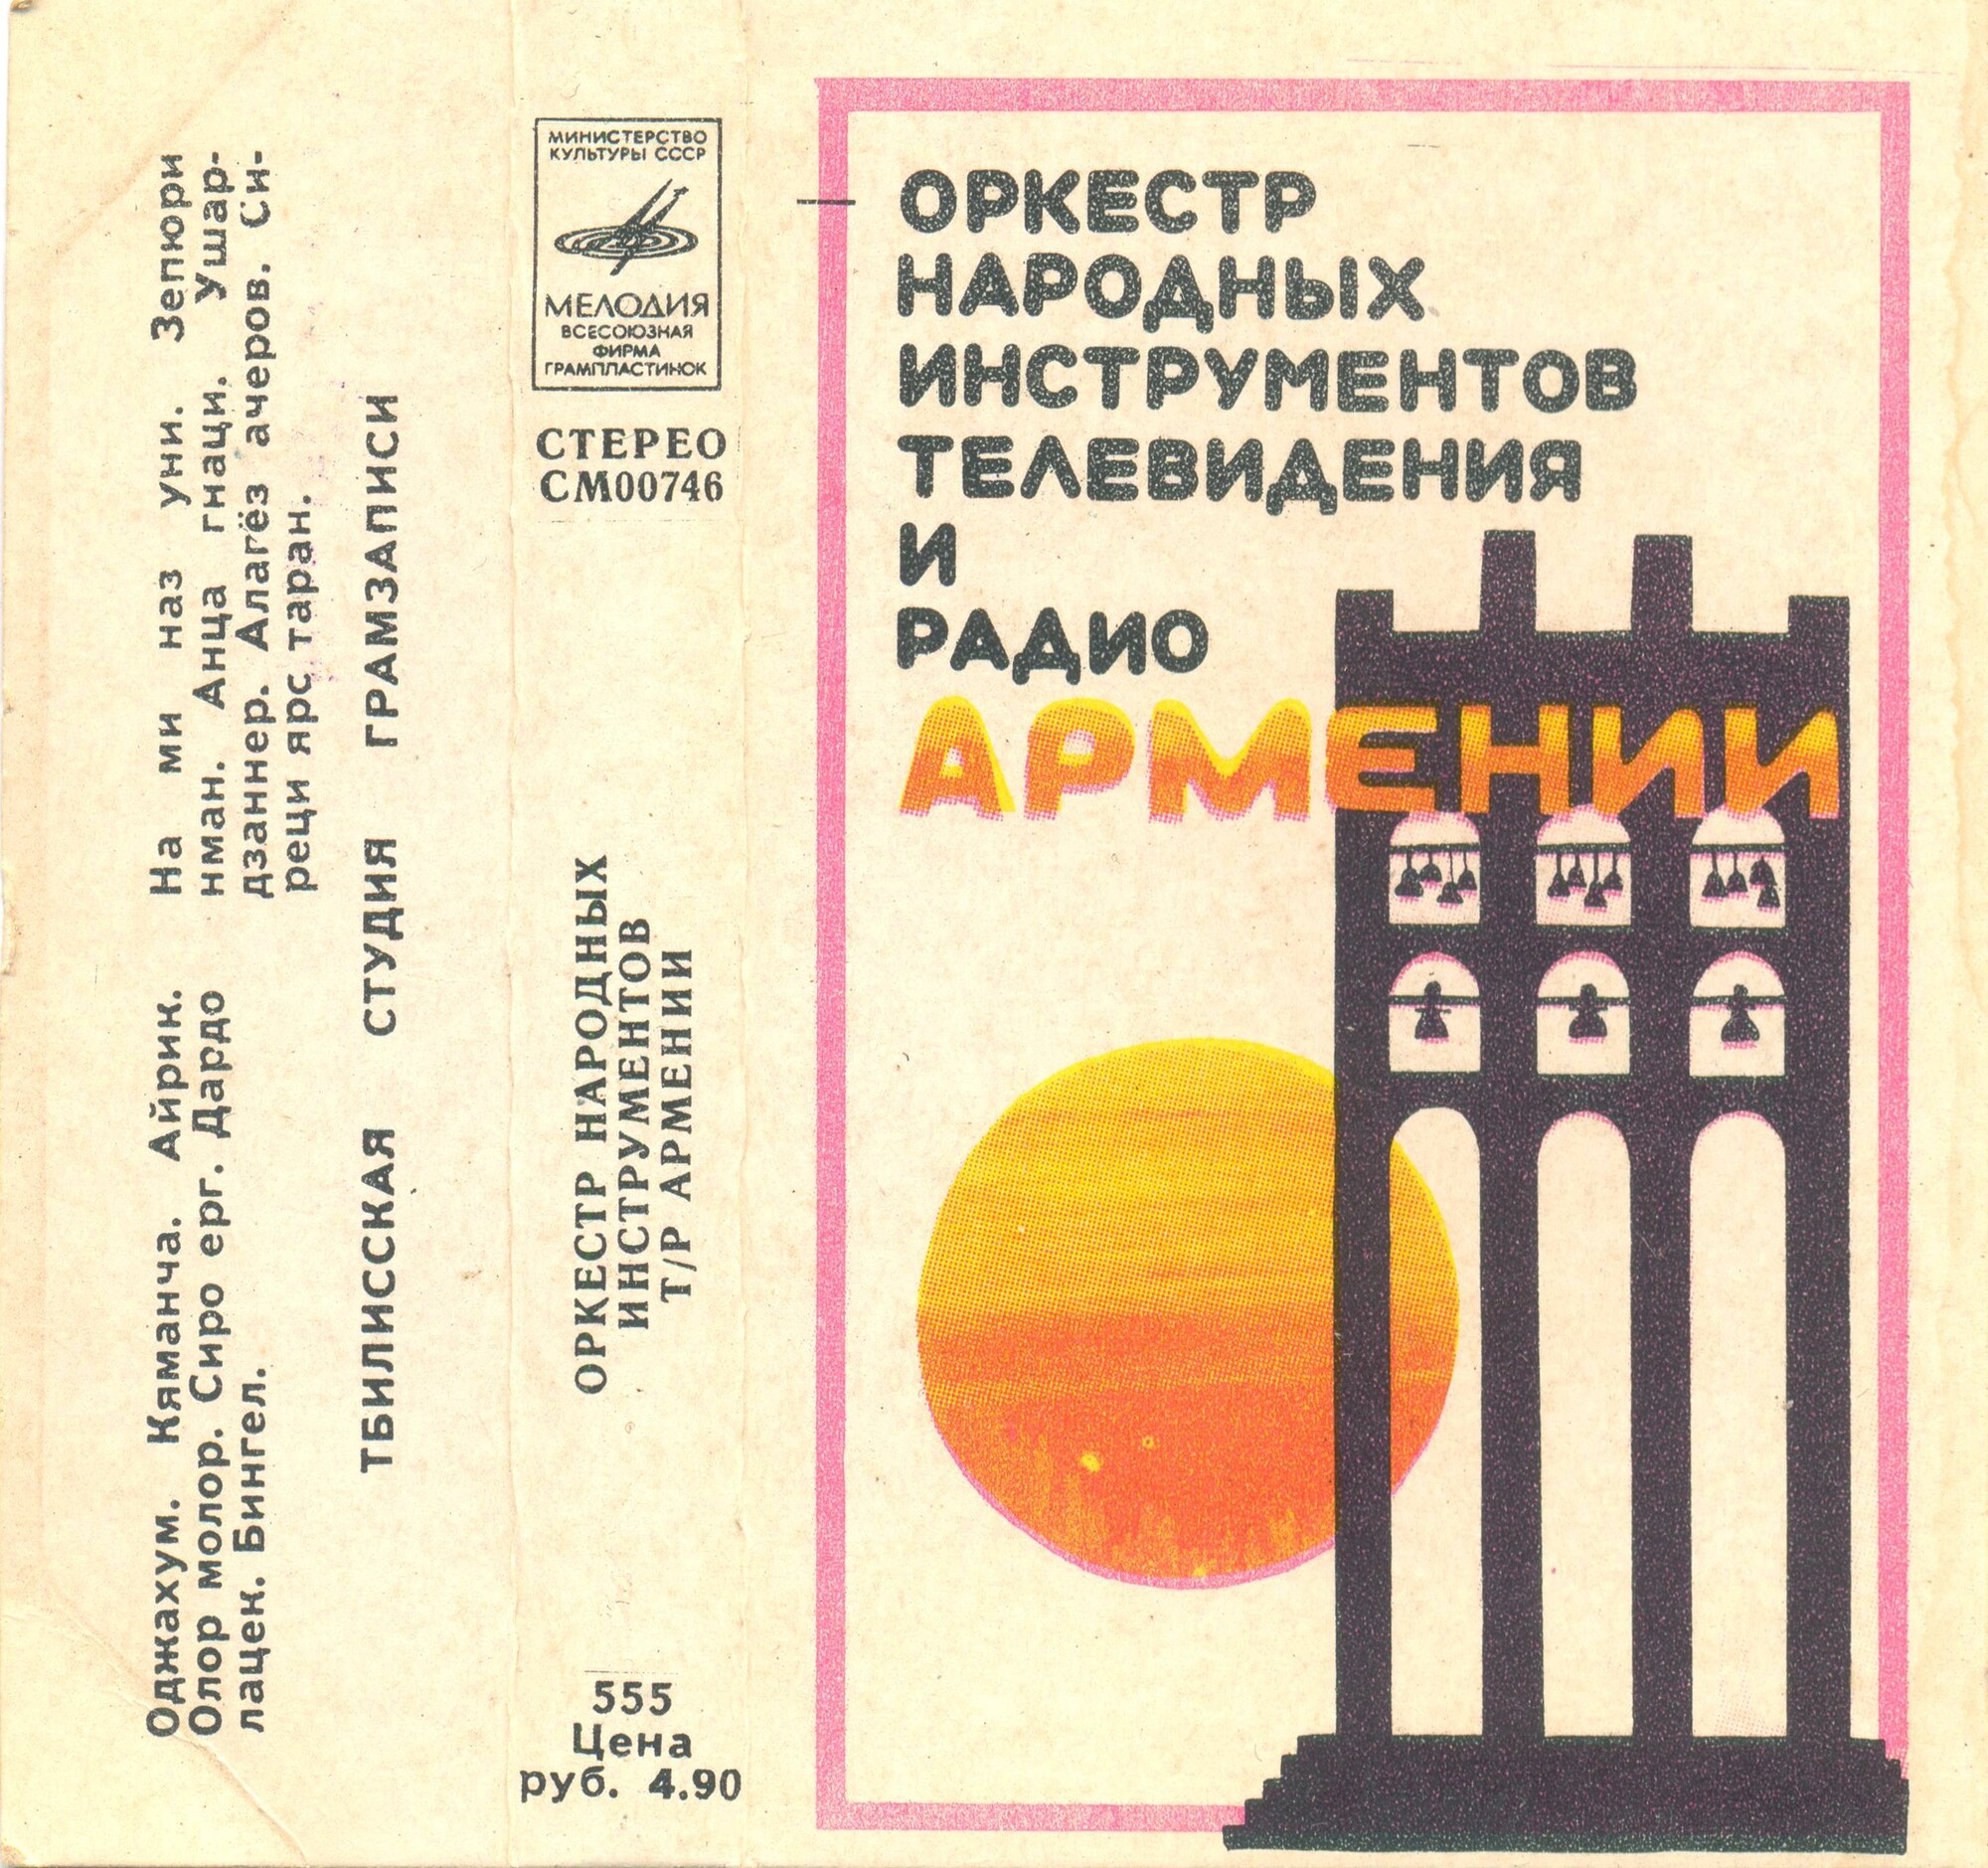 Оркестр народных инструментов телевидения и радио Армении